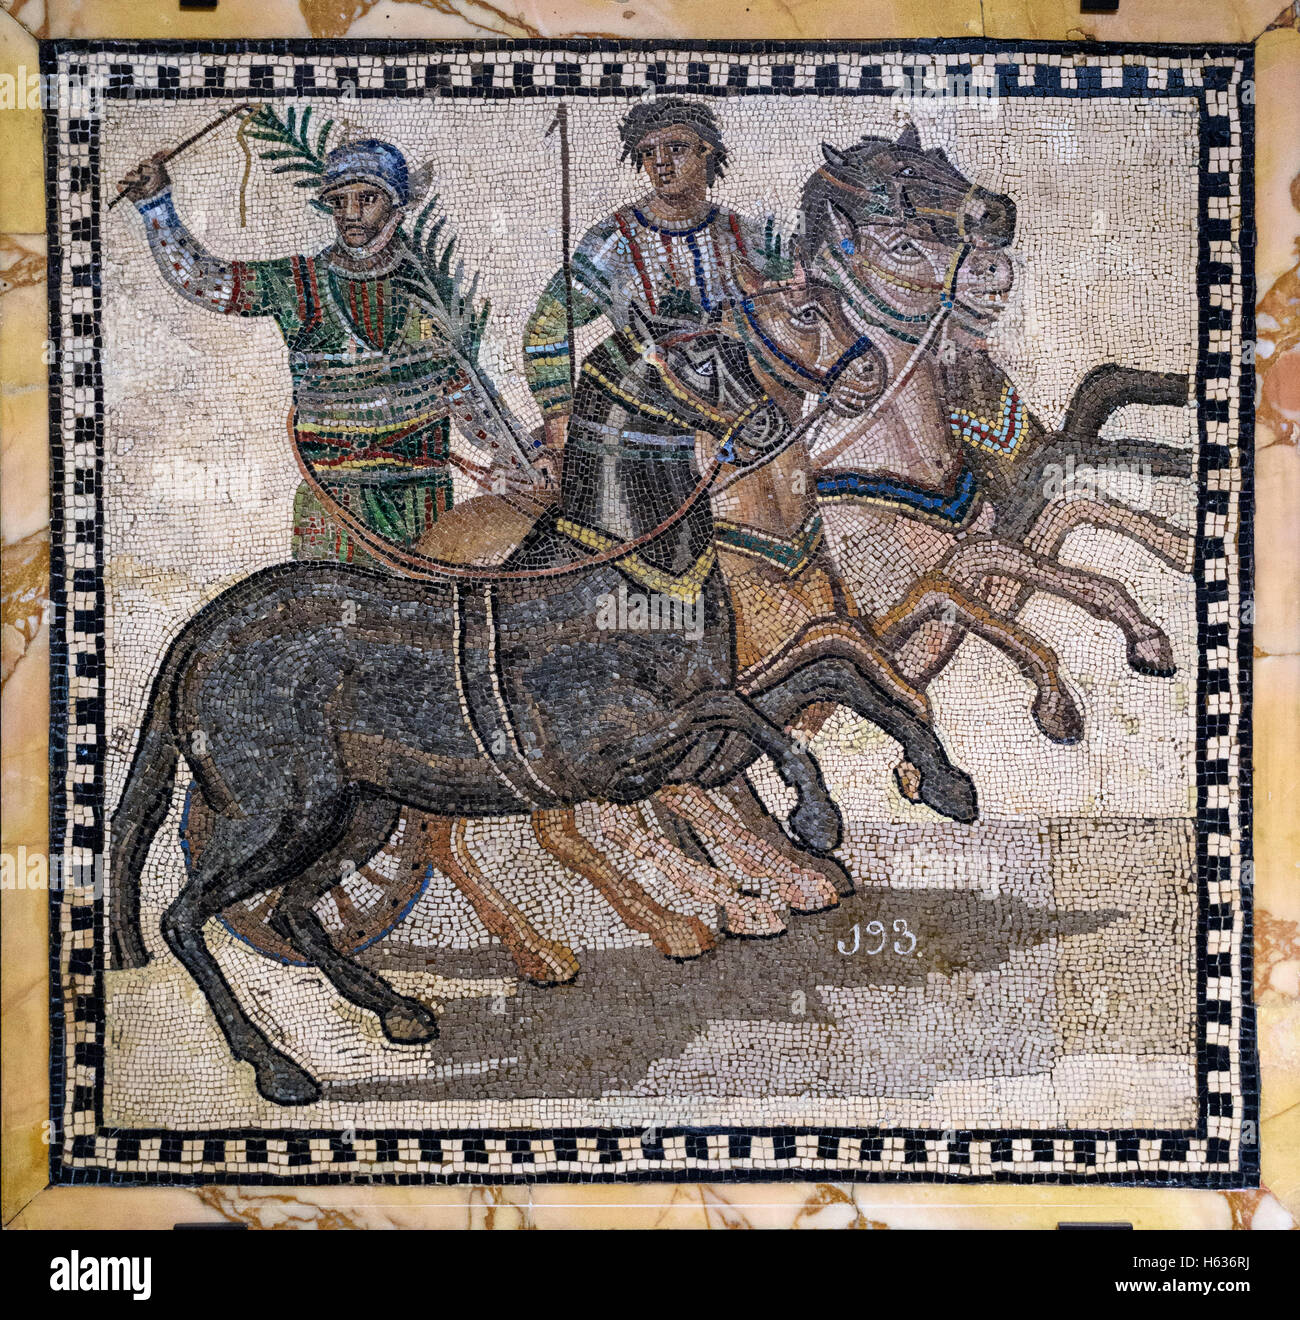 Madrid. Spanien. Quadriga Factio prassini, Römisches Mosaik Darstellung ein Wagenrennen, 3. Jahrhundert n. Chr.. Stockfoto